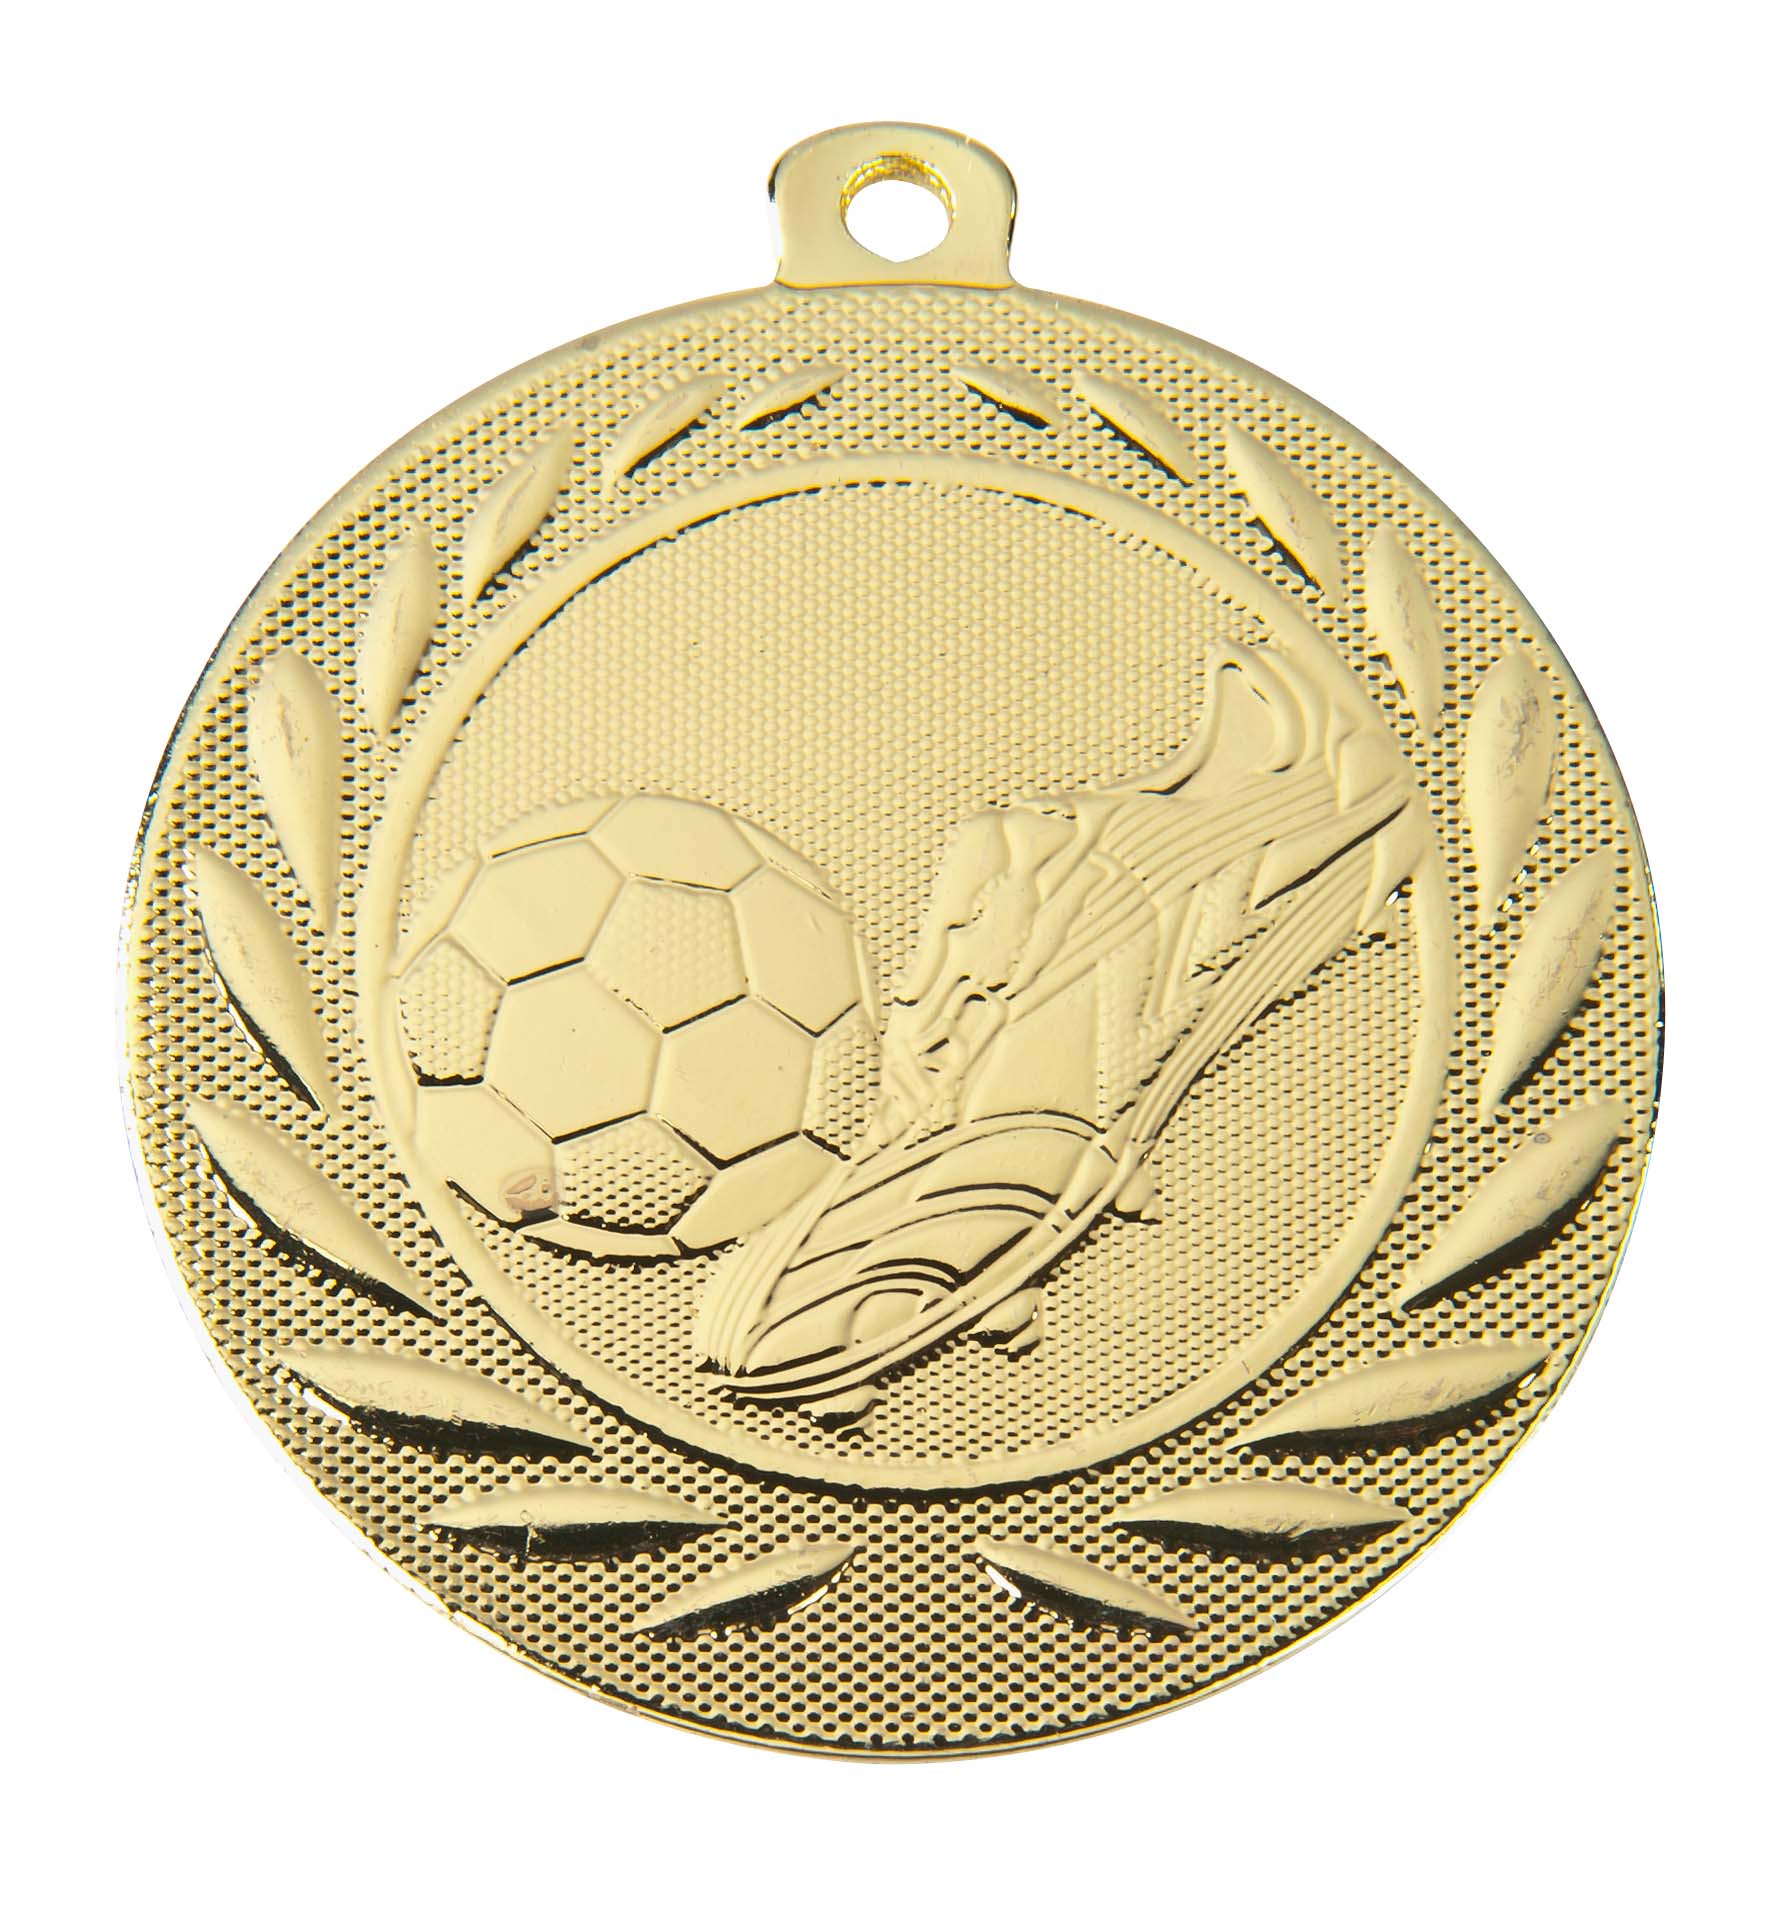 Fußball Medaille DI5000B inkl. Band und Beschriftung Gold Fertig montiert gegen Aufpreis